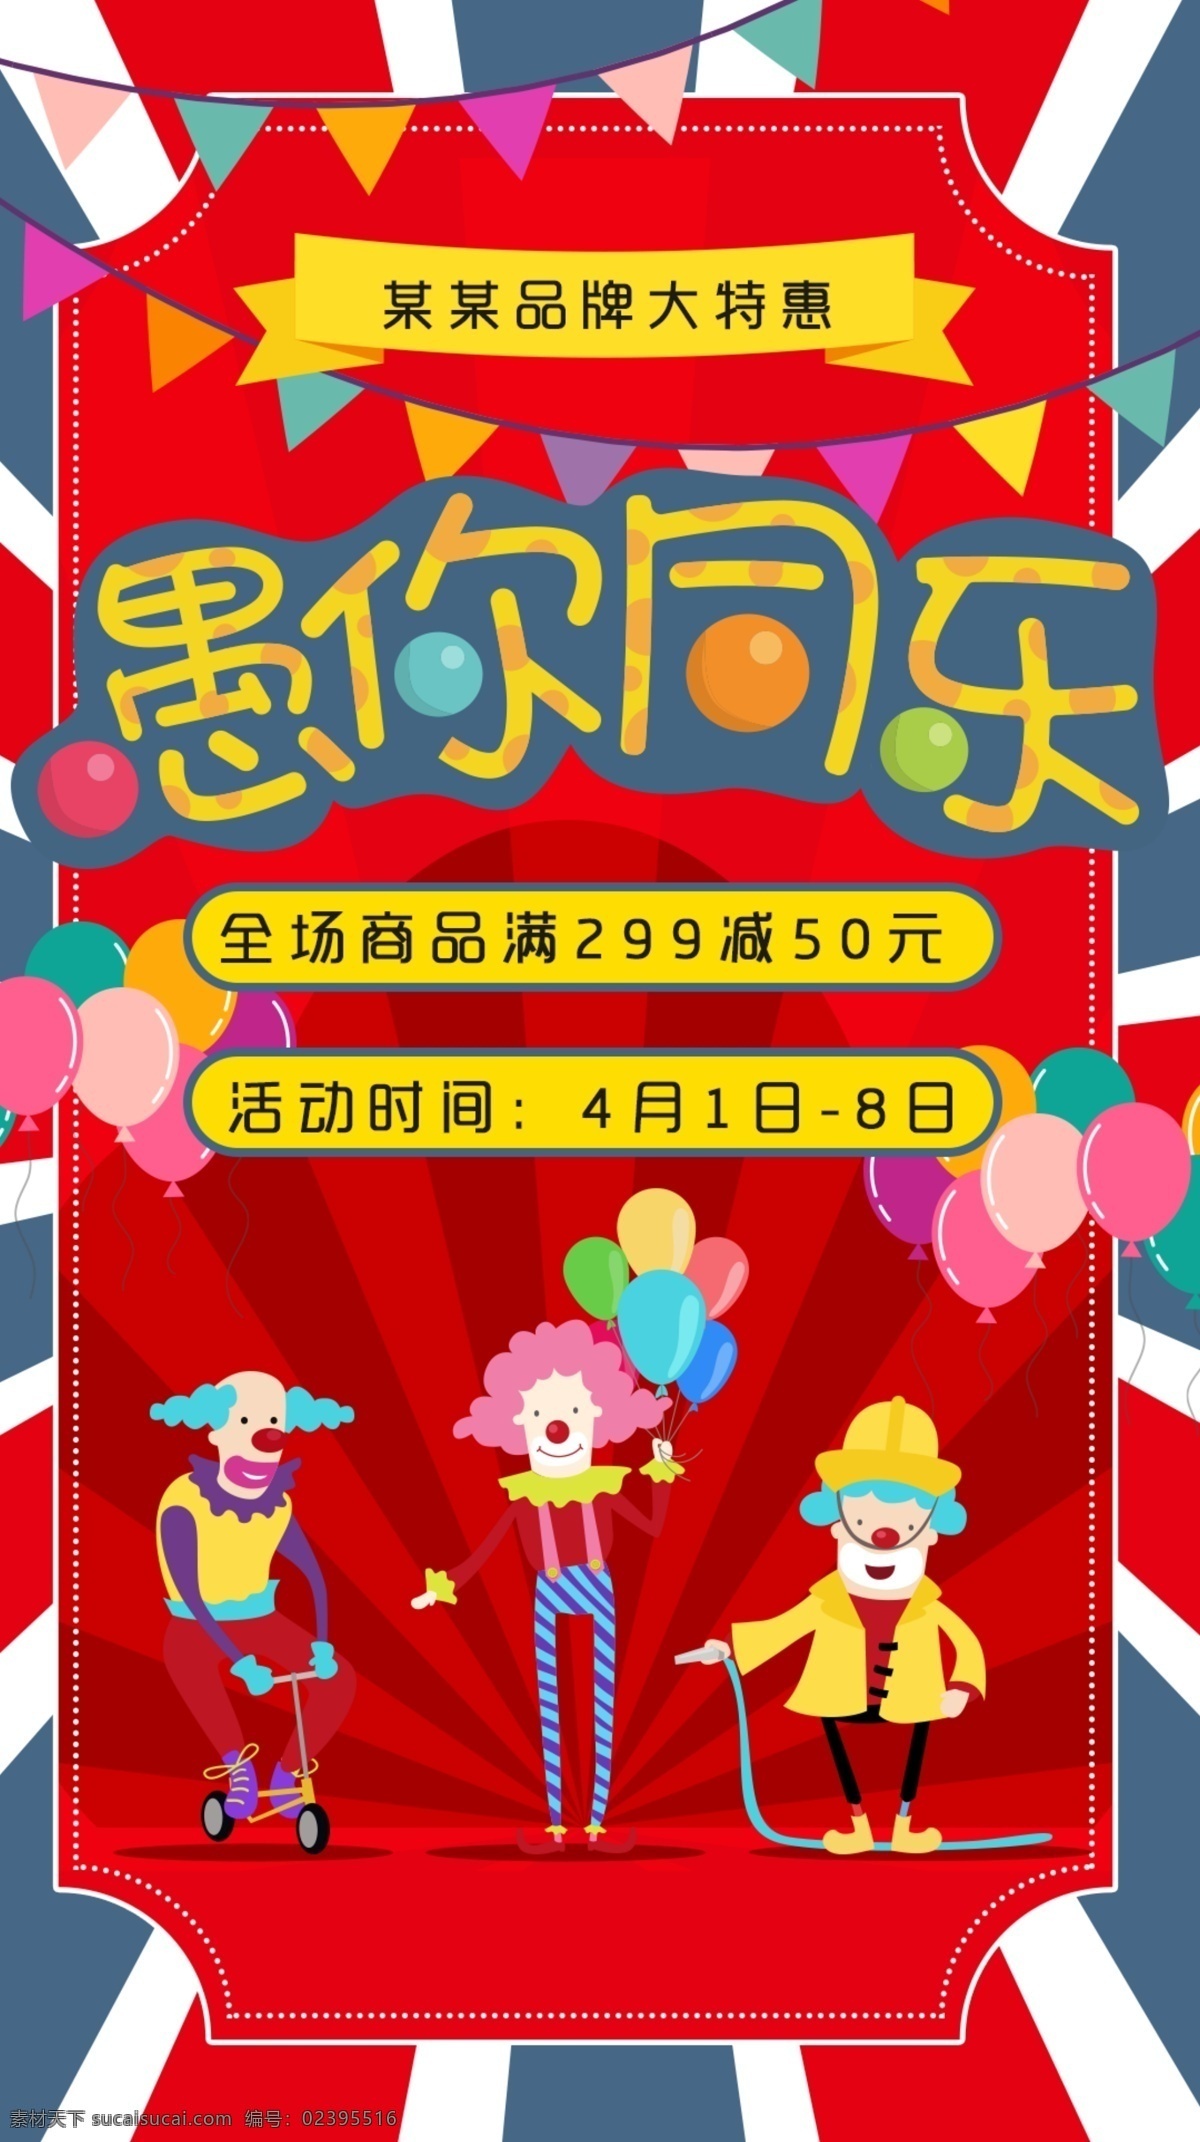 愚人节 小丑 移动 首页 海报 促销 模板 游乐园 大促 特惠 马戏团 节庆 活动